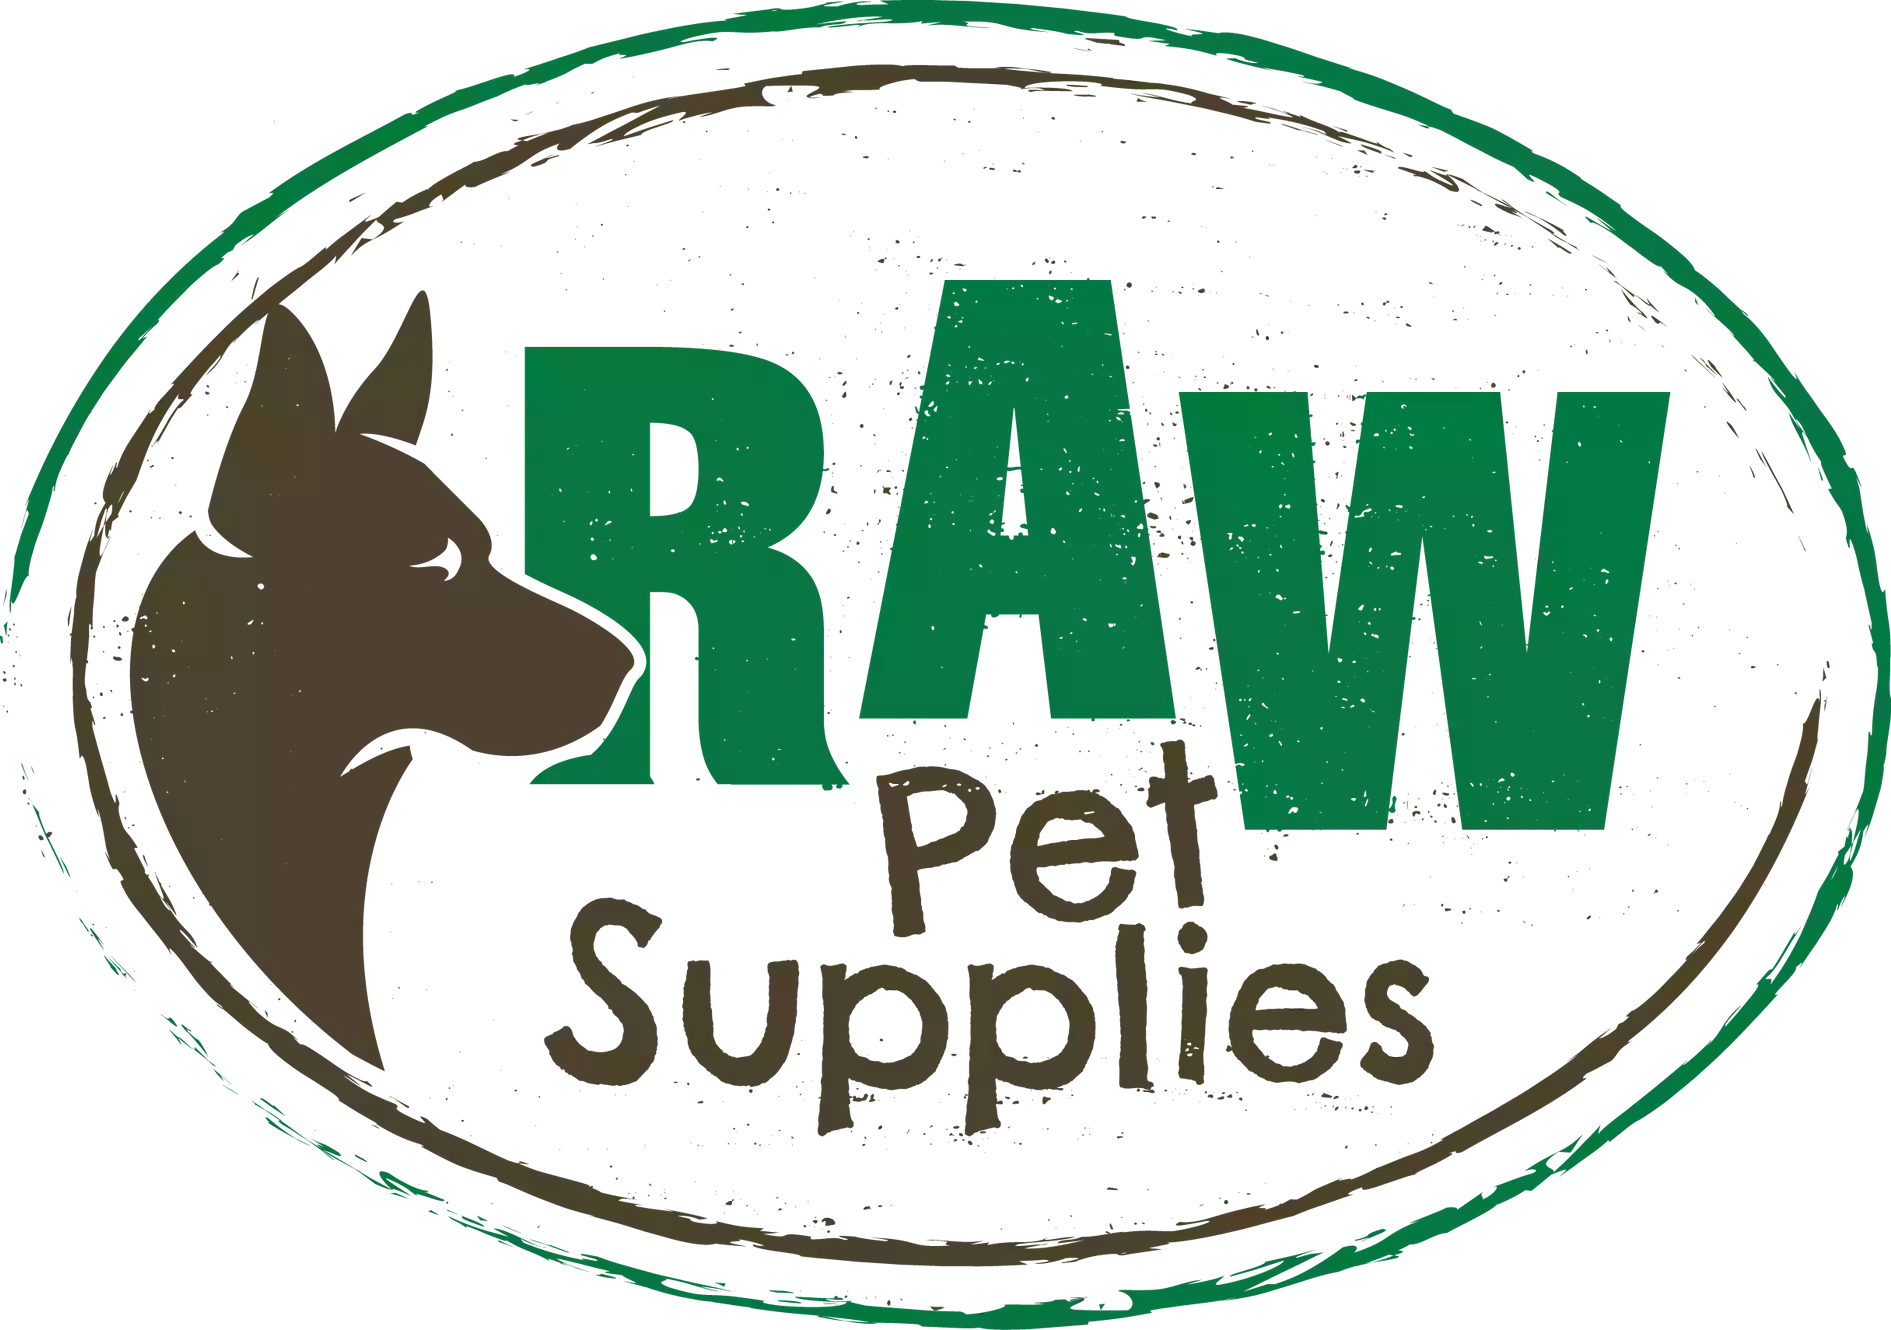 Raw Pet Supplies